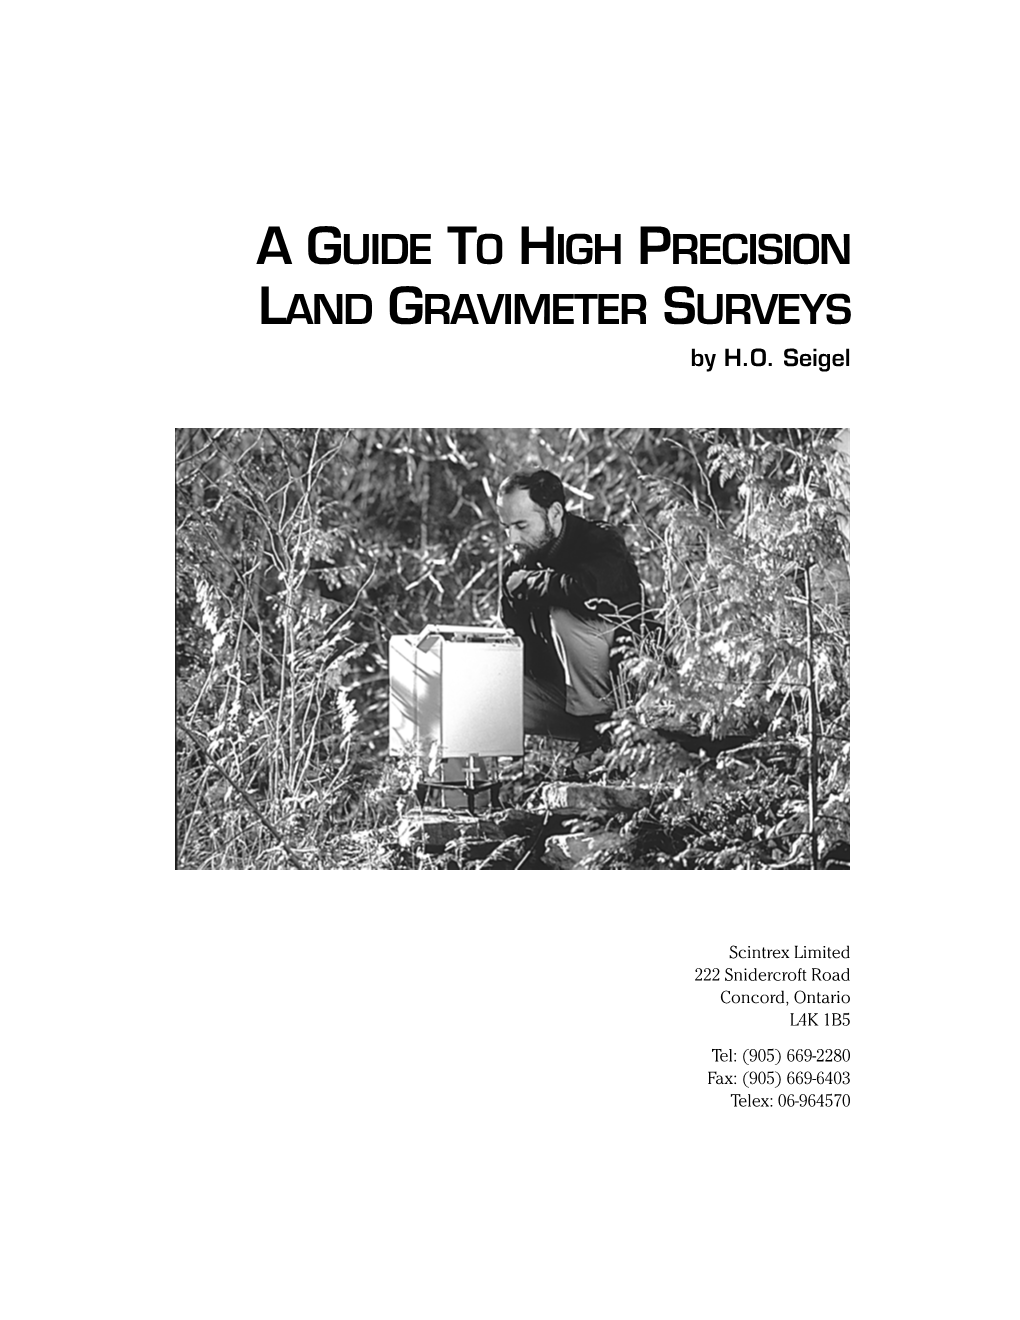 A GUIDE to HIGH PRECISION LAND GRAVIMETER SURVEYS by H.O